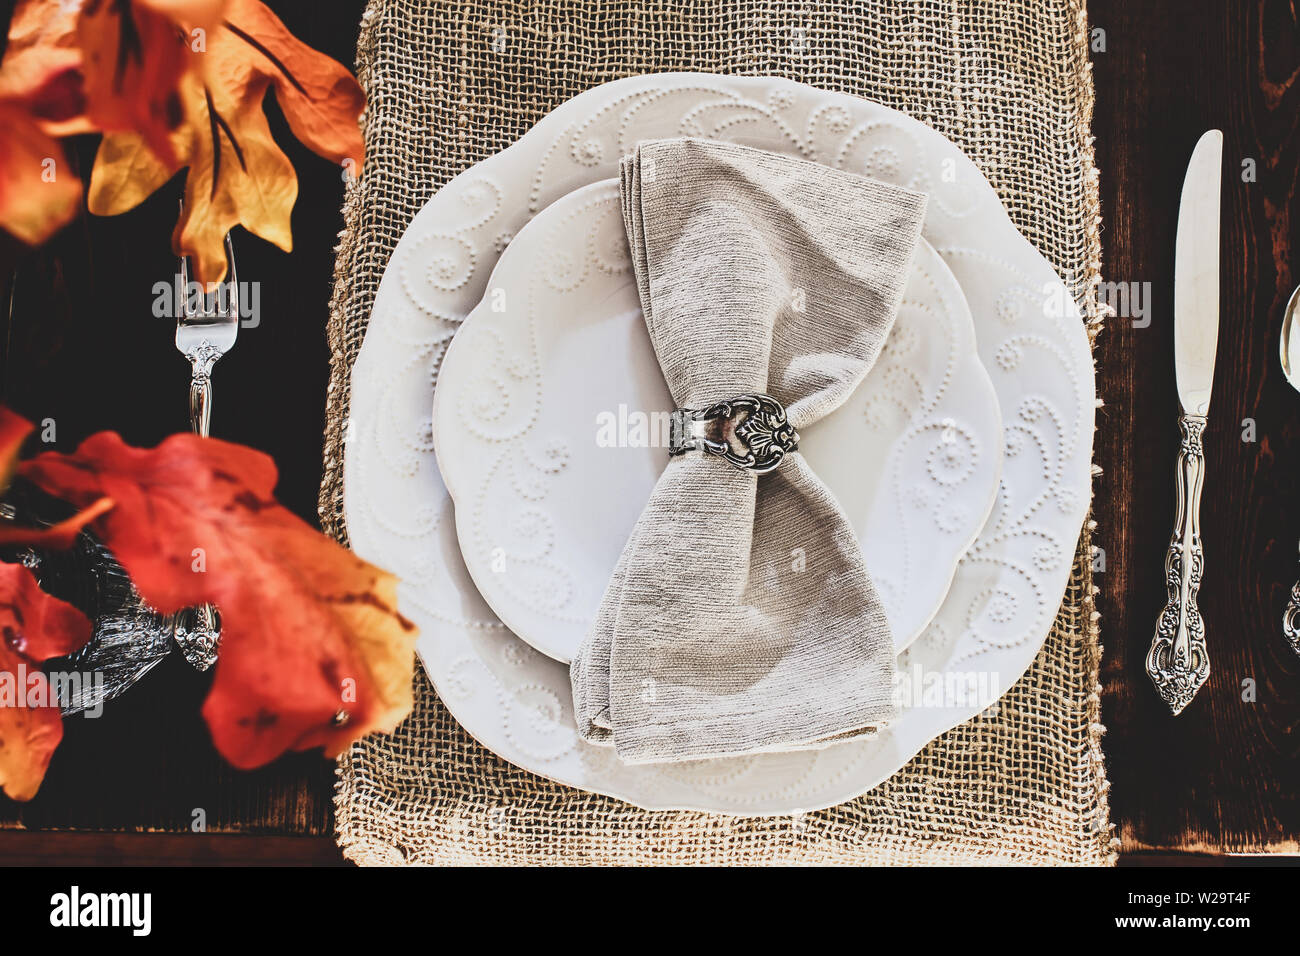 Thanksgiving Day oder Herbst Ort Einstellung mit Servietten und Besteck auf sackleinen Tischläufer über ein rustikales Bauernhaus Tabelle Hintergrund. Bunte fallen lassen Stockfoto